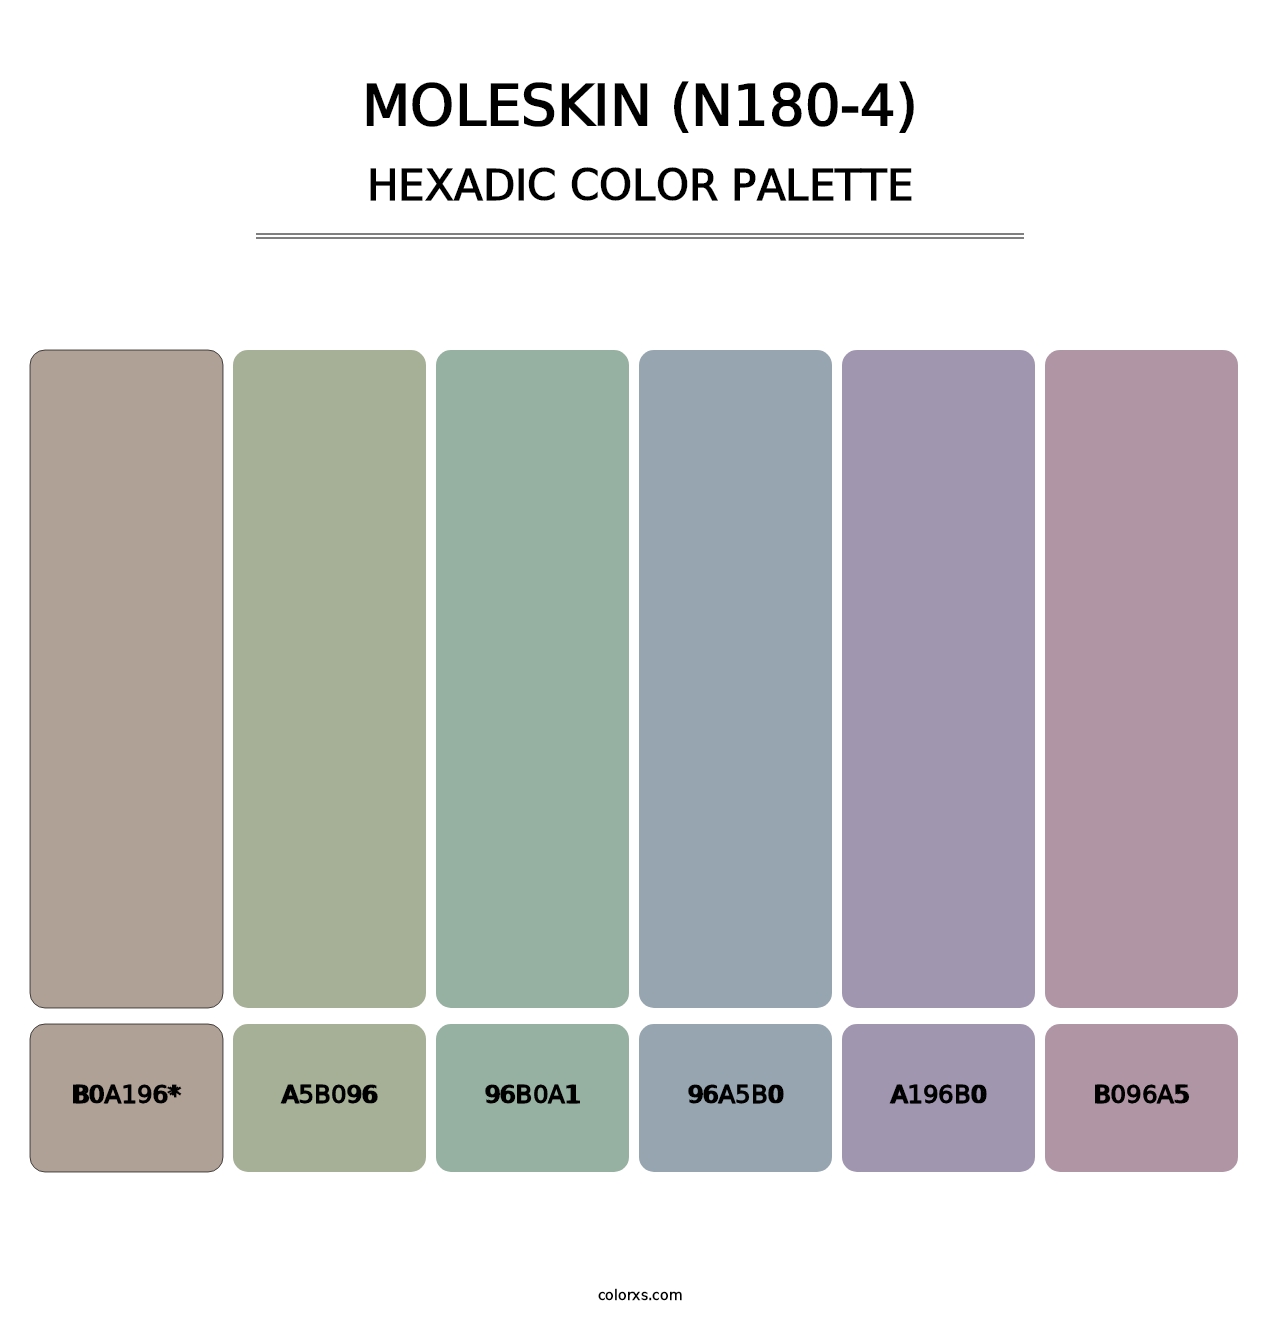 Moleskin (N180-4) - Hexadic Color Palette